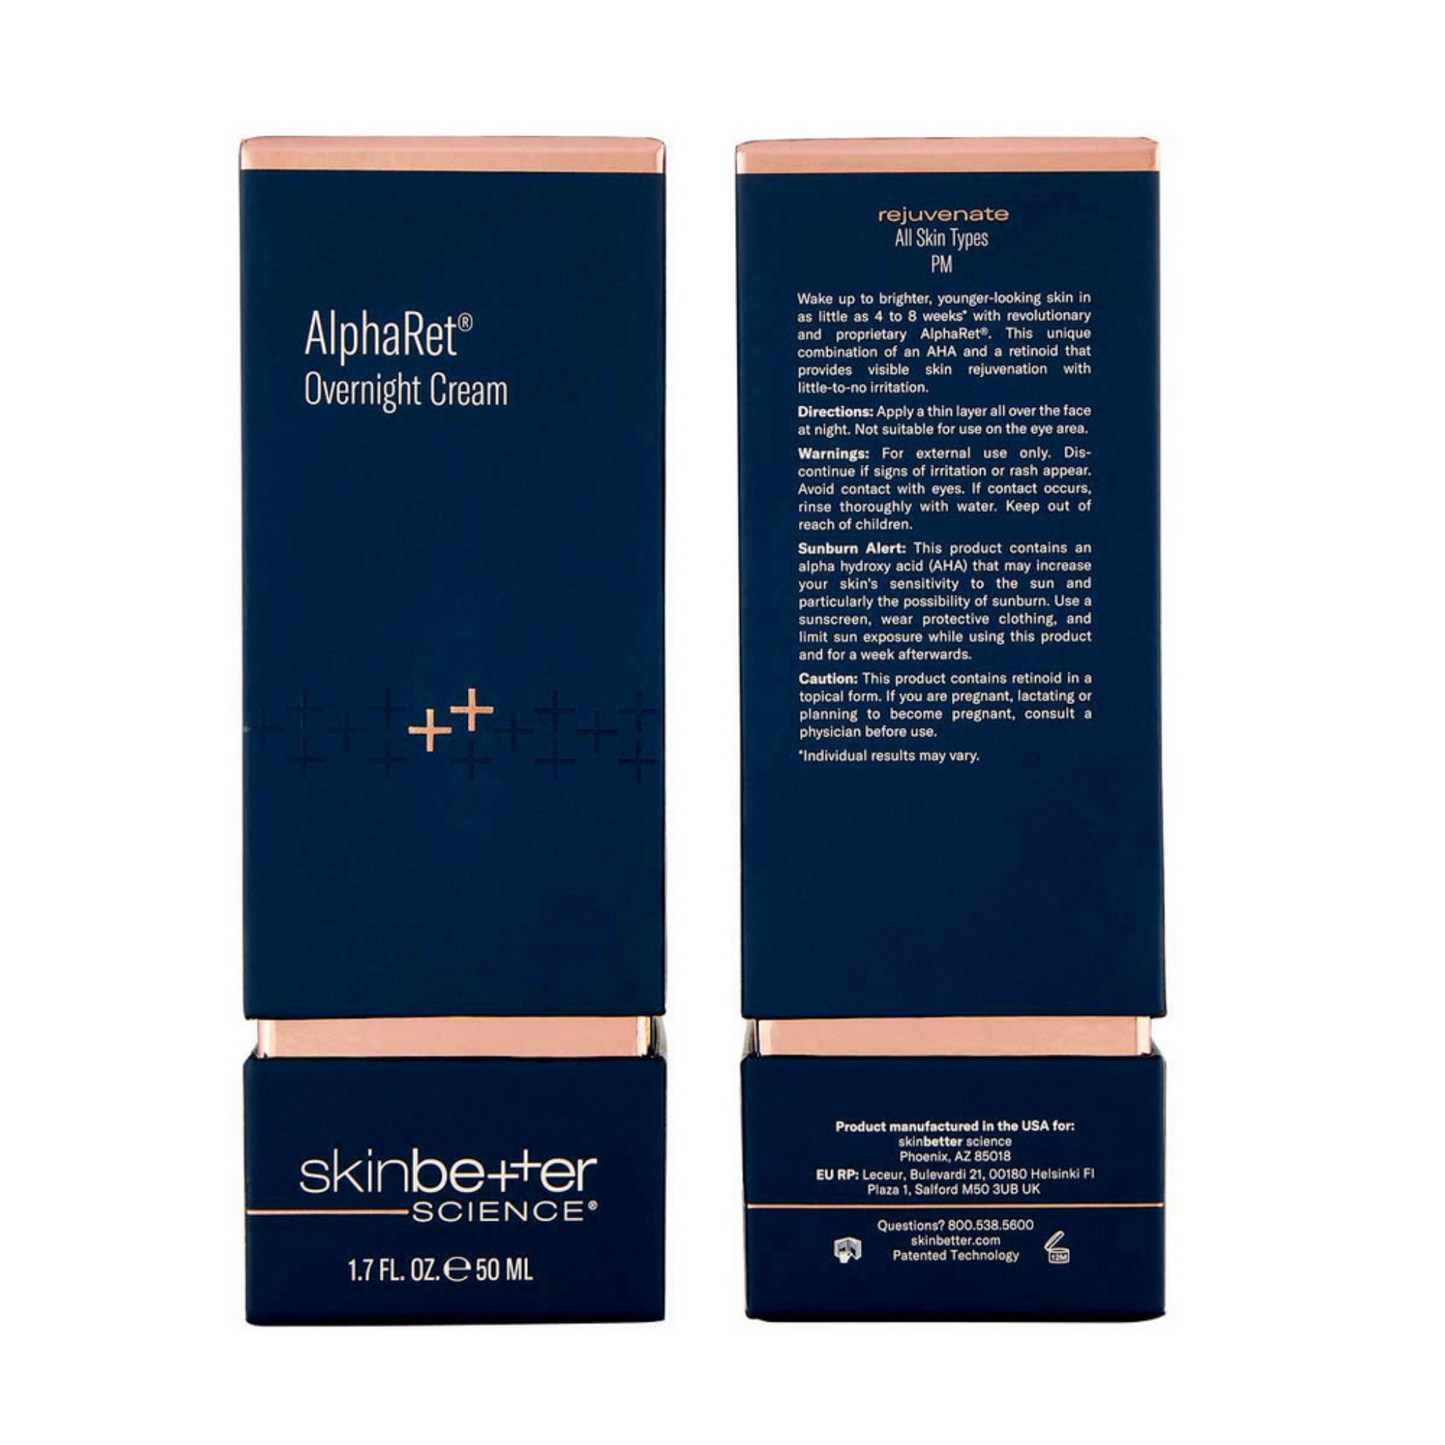 AlphaRet Overnight Cream | skinbetter science®